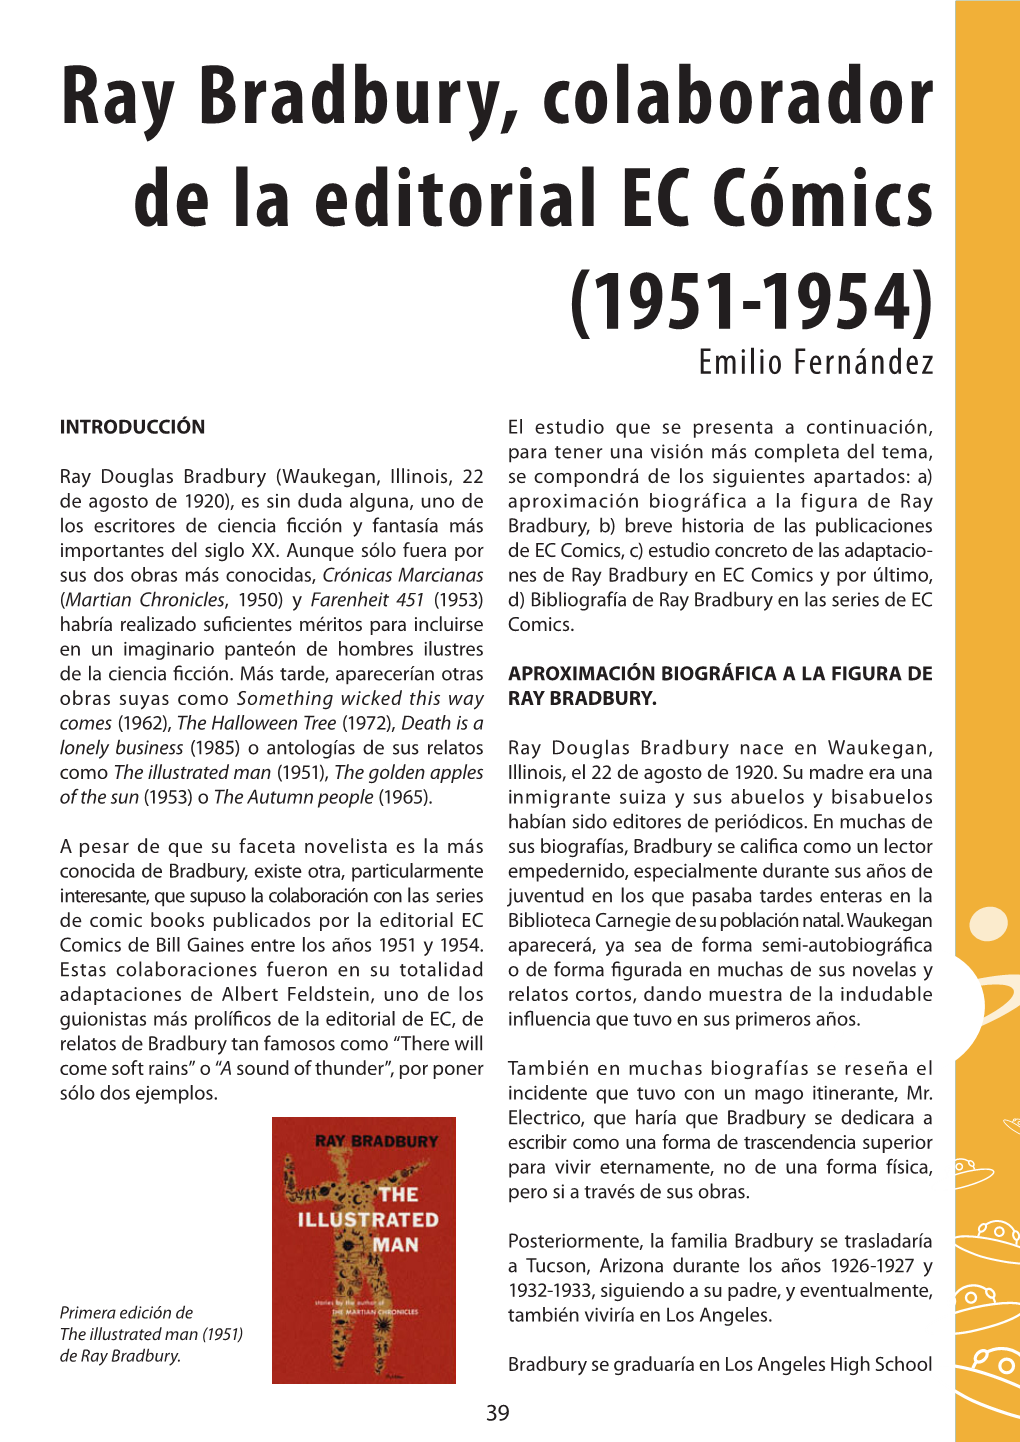 Ray Bradbury, Colaborador De La Editorial EC Cómics (1951-1954) Emilio Fernández